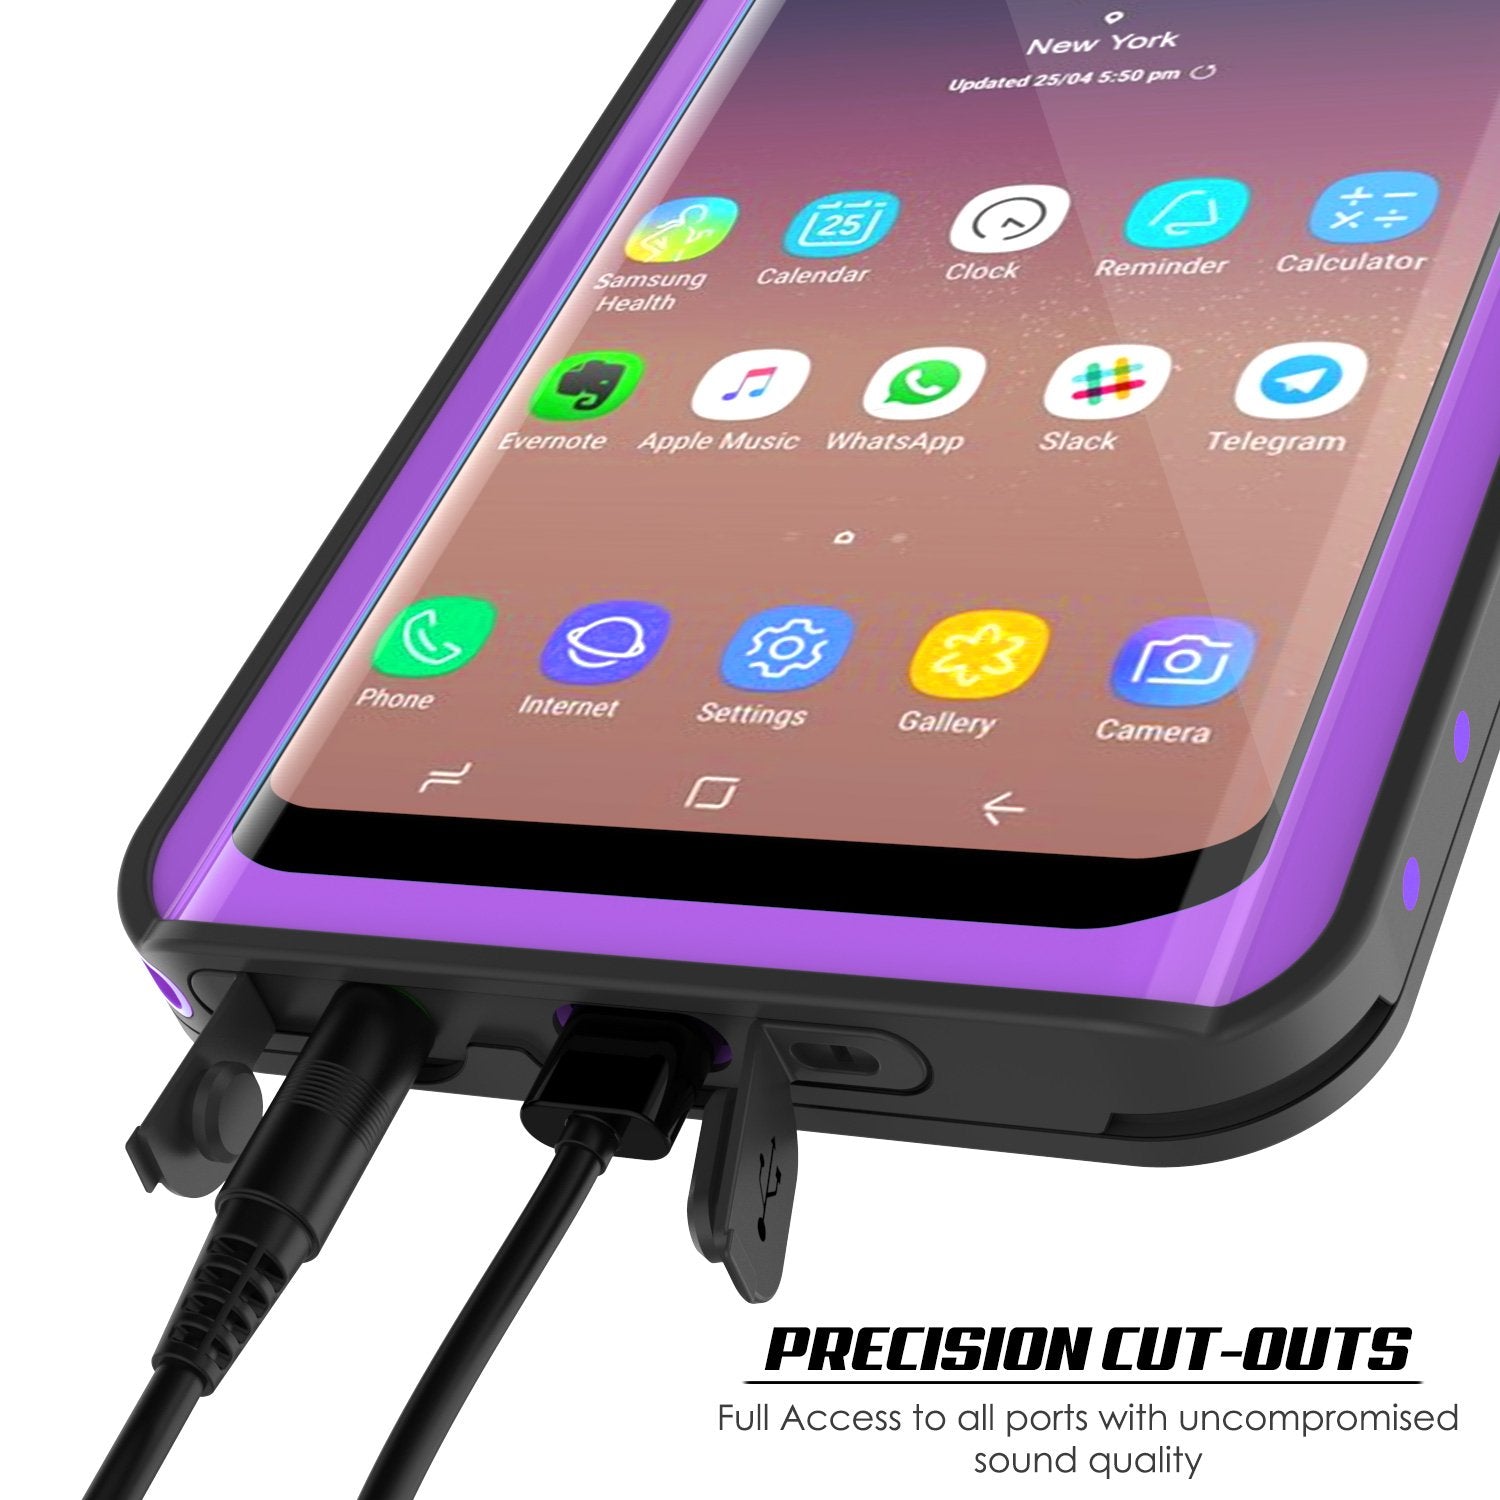 Galaxy S9 Waterproof Case PunkCase StudStar Purple Thin 6.6ft